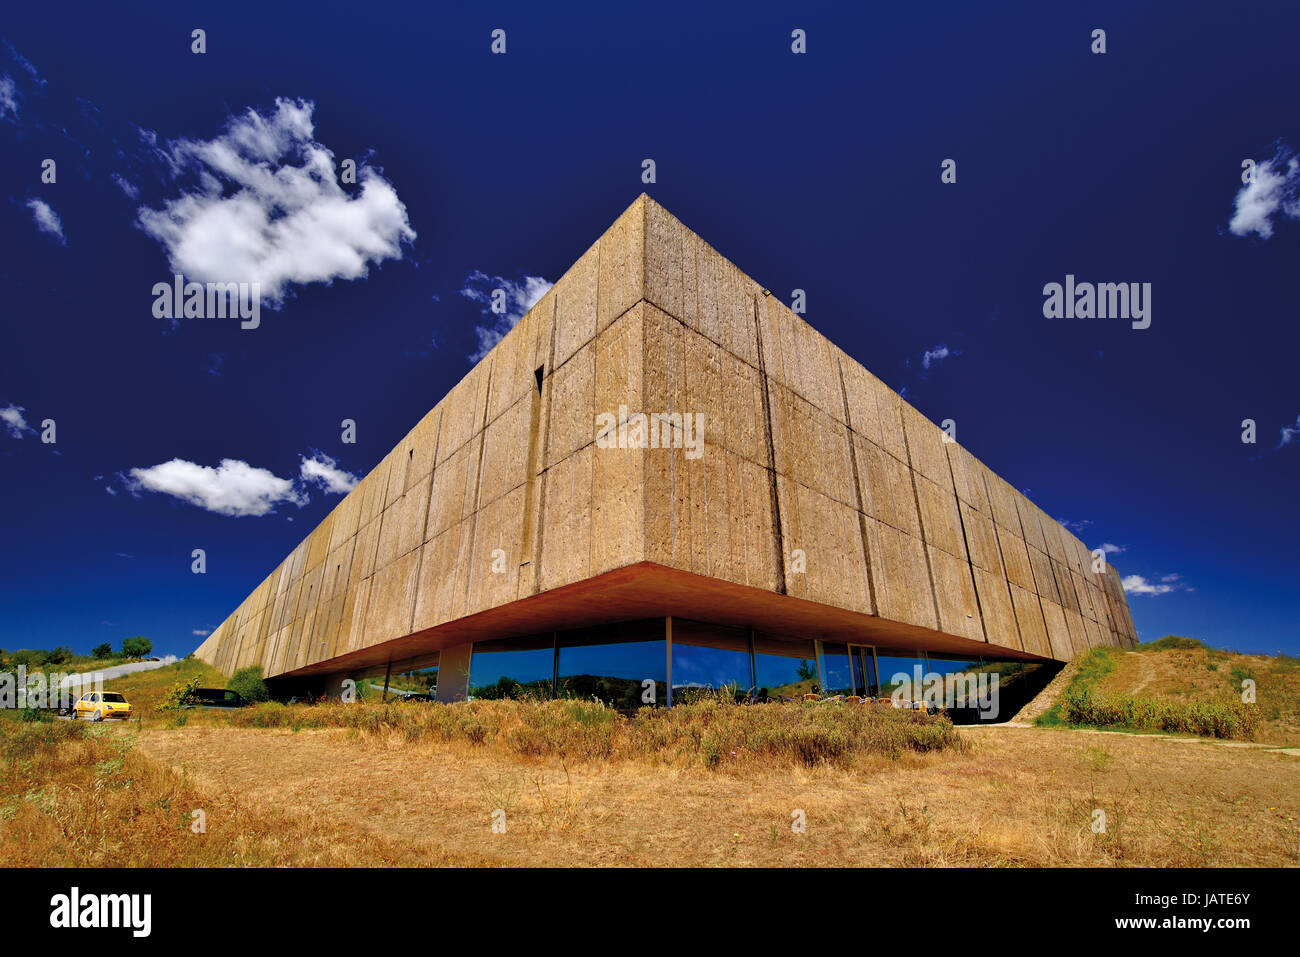 Vue extérieure et détails architecturaux de l'aco Museum de Vila Nova de Foz Coa, Portugal Banque D'Images